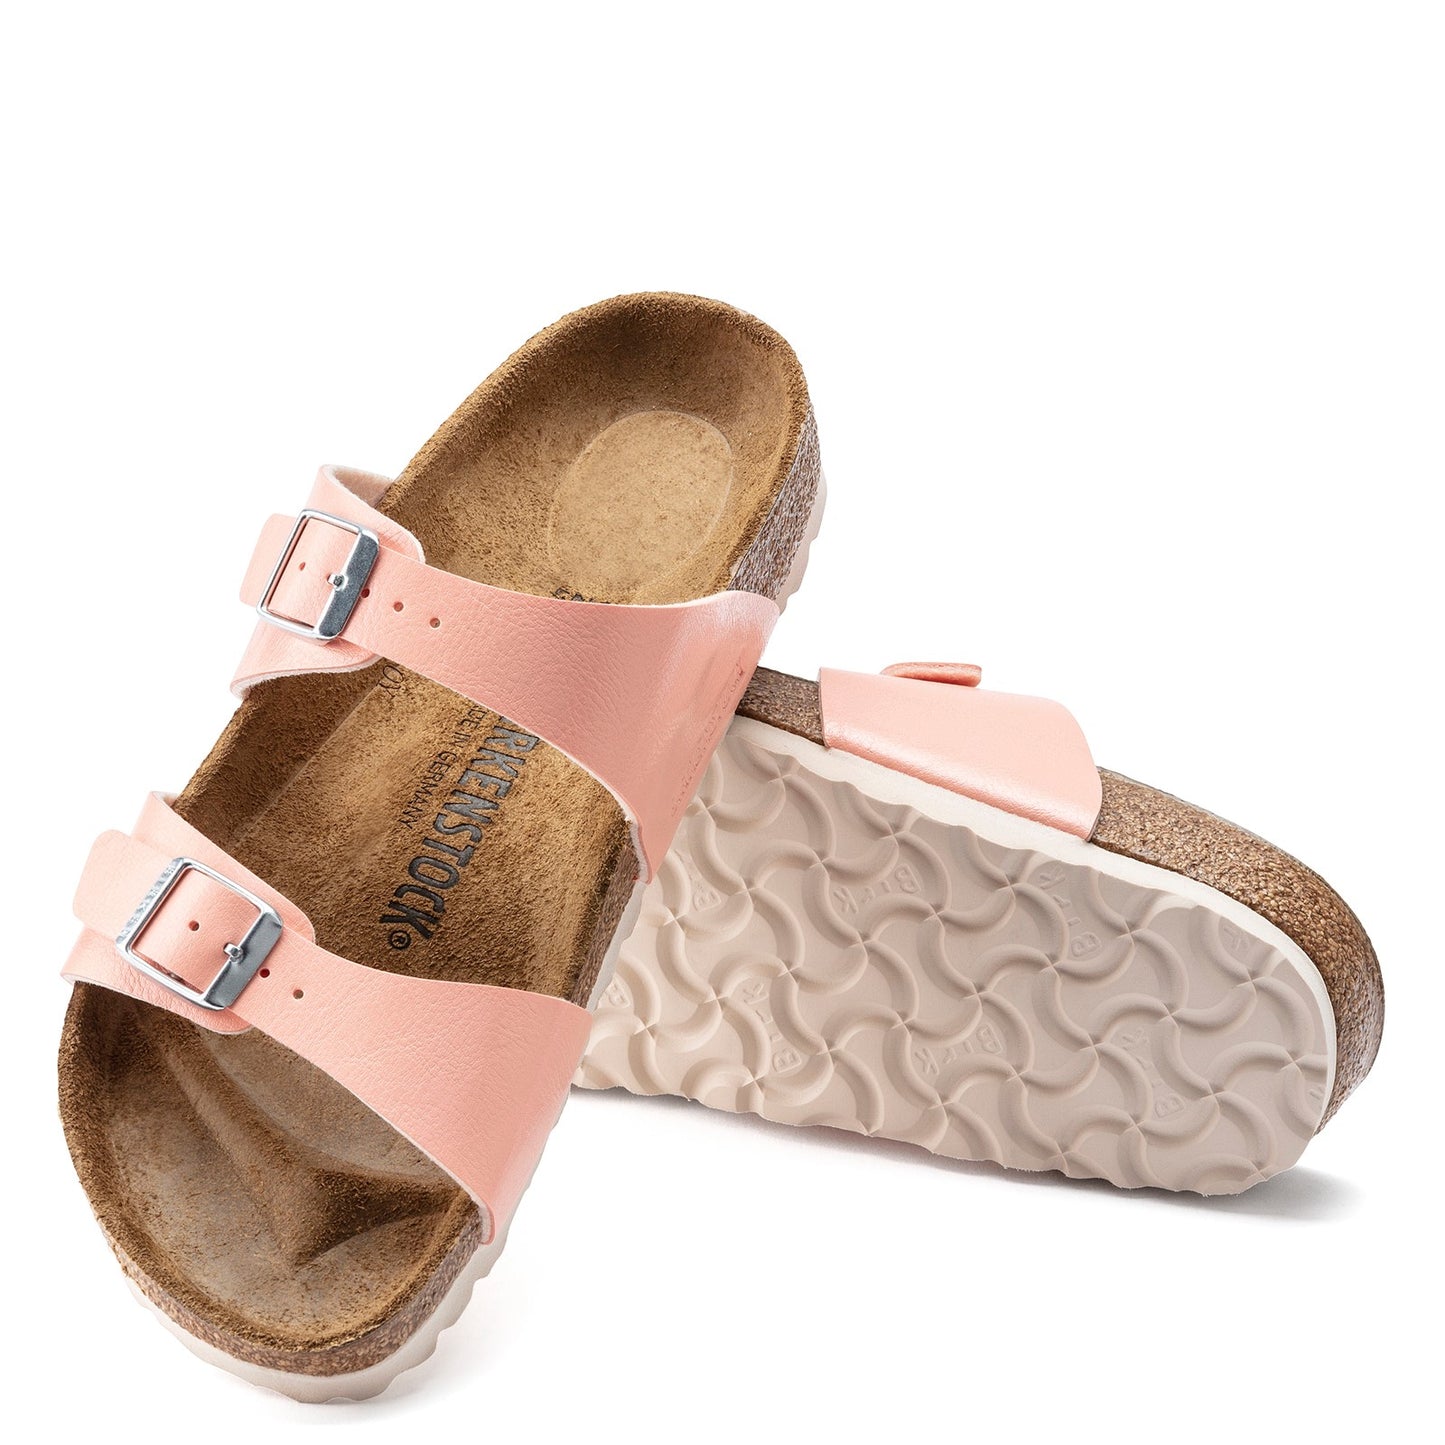 Peltz Shoes  Women's Birkenstock Sydney Birko-Flor Slide Sandal - Narrow Width PEACH 1021 465 N